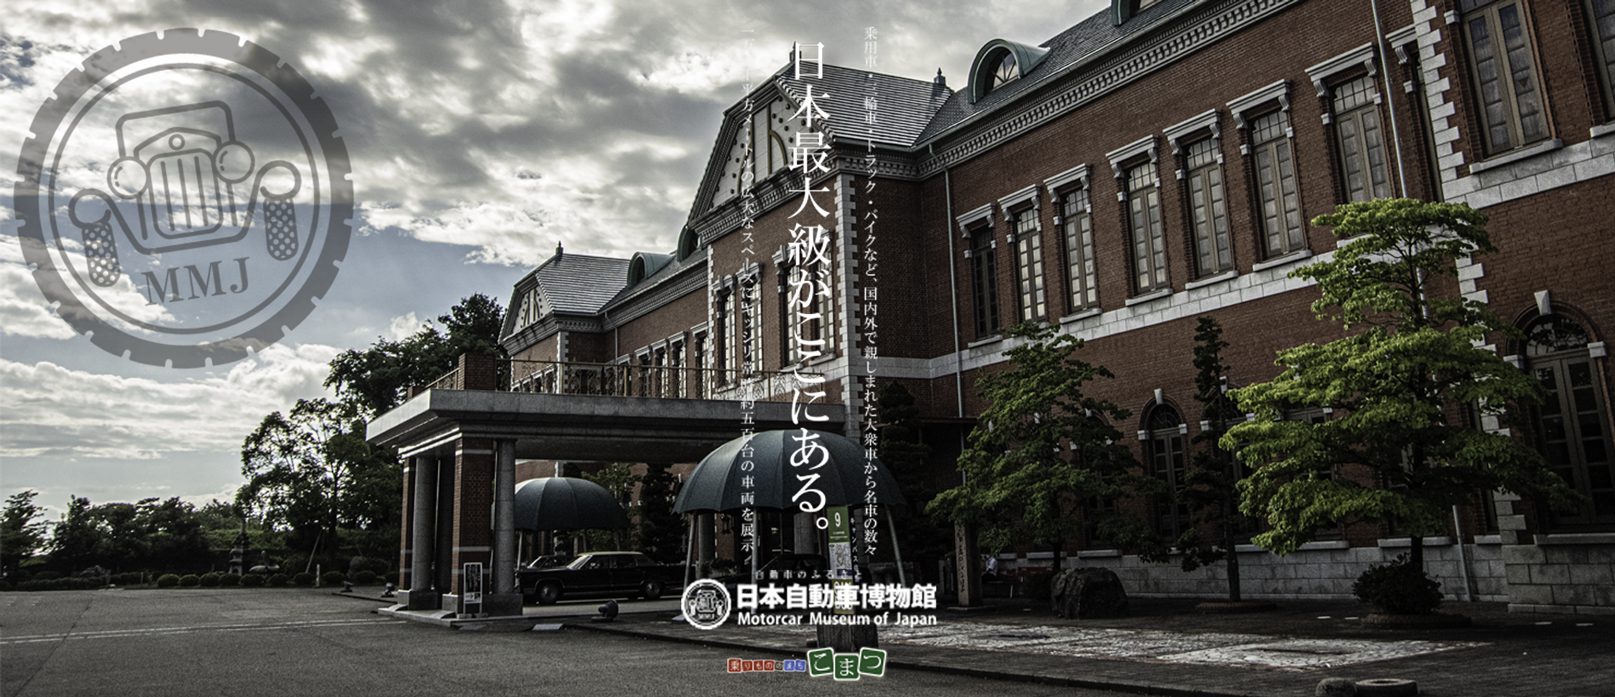 日本最大級がここにある。石川県小松市、日本自動車博物館